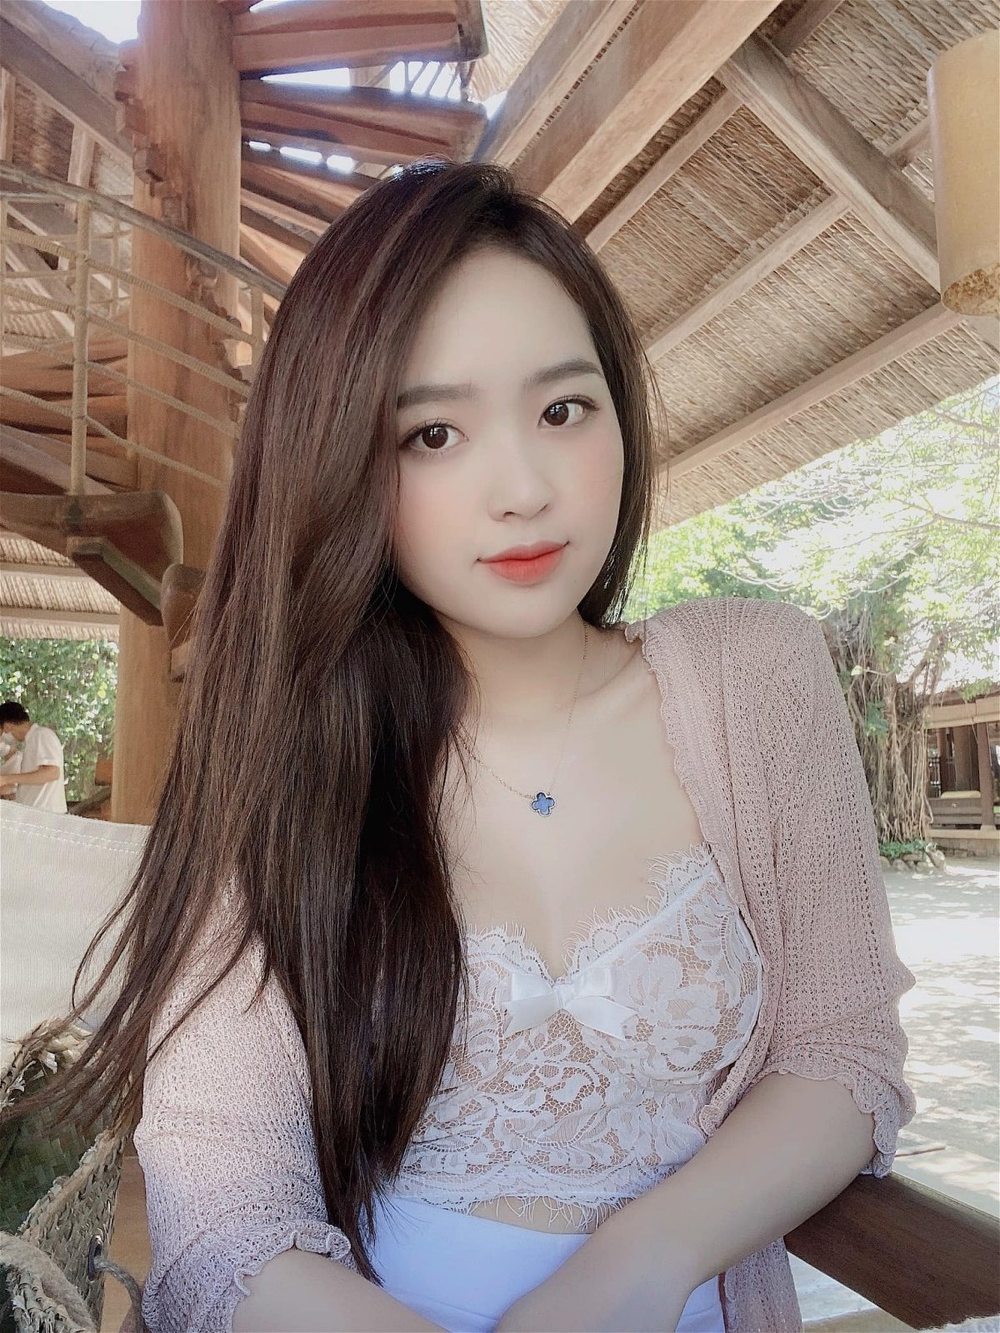 Nàng hot girl Lê Phương Anh dính đủ thị phi trên mạng xã hội